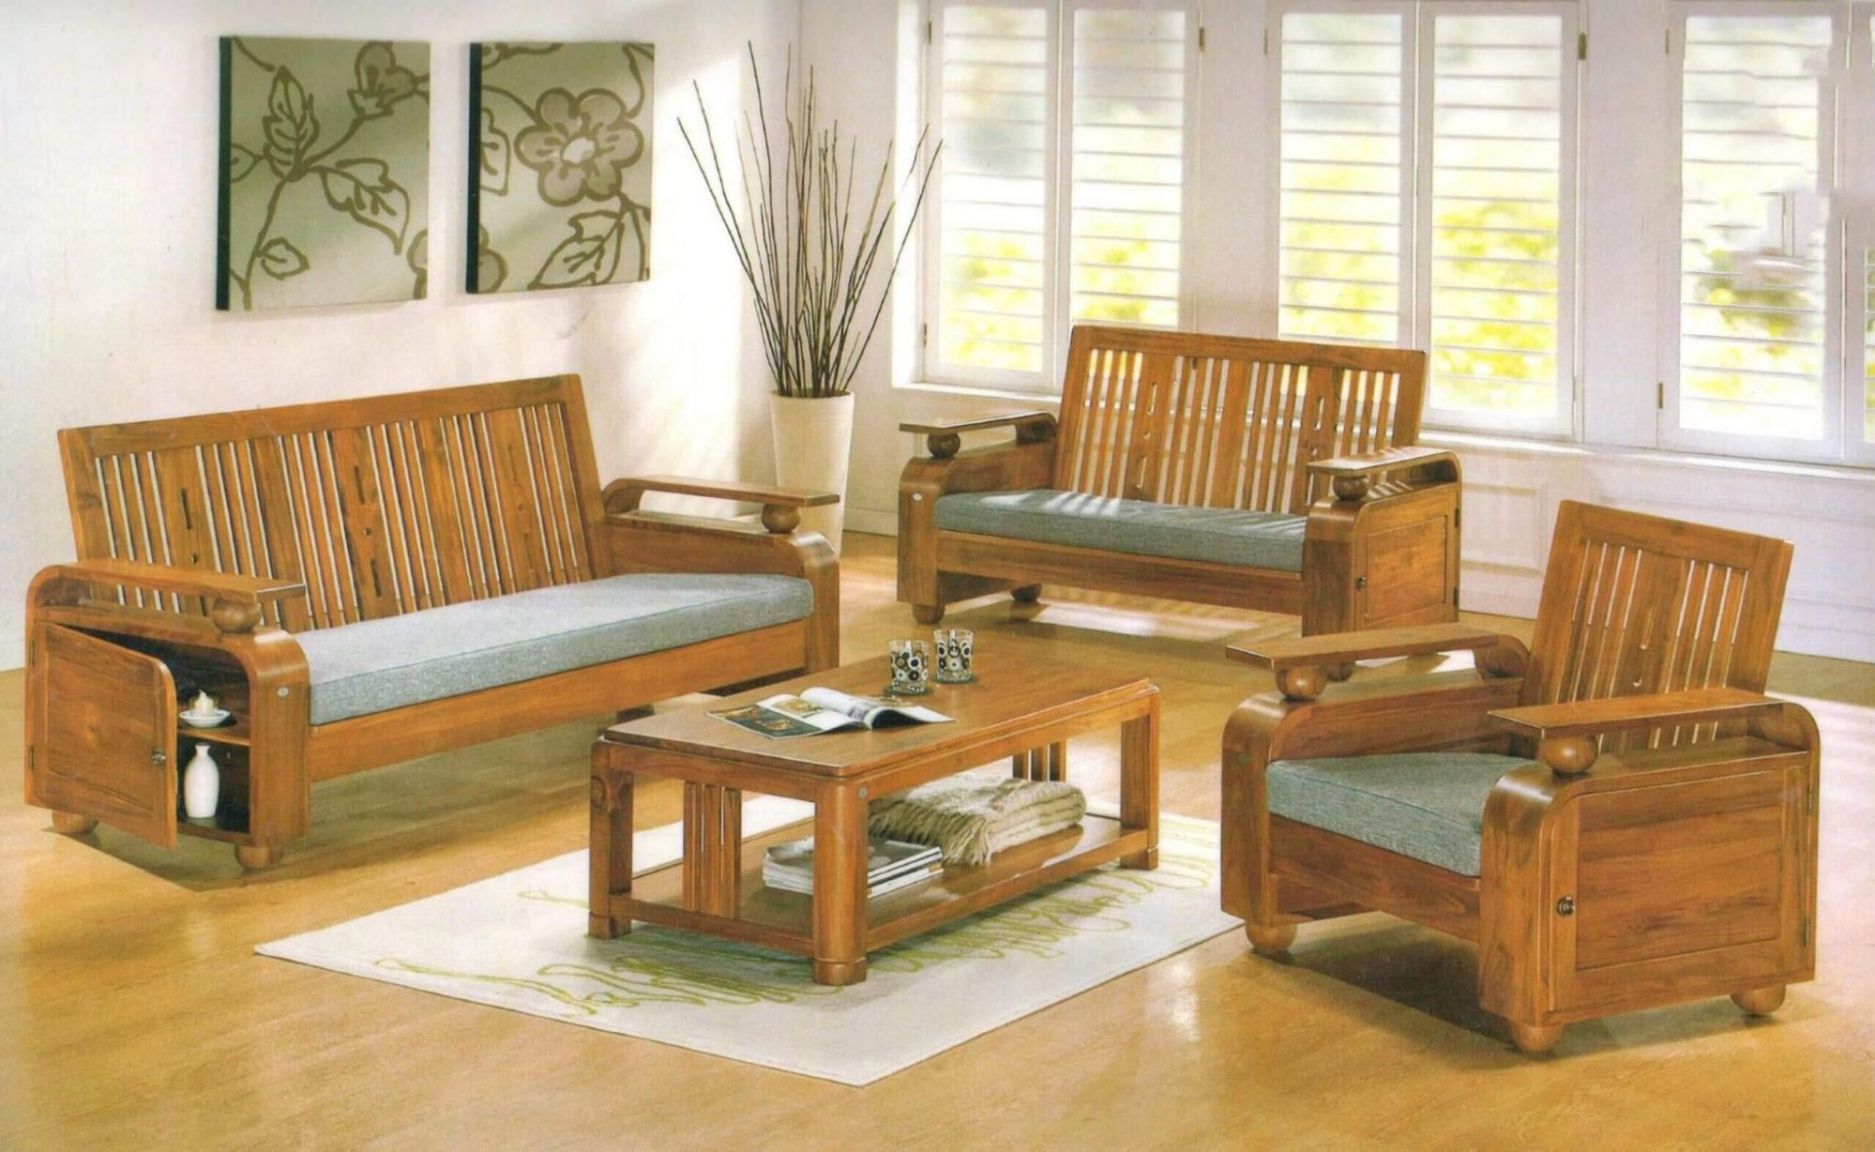 Lựa chọn đơn vị uy tín để có thể mua được những bộ bàn ghế gỗ phòng khách 7 triệu chất lượng đảm bảo